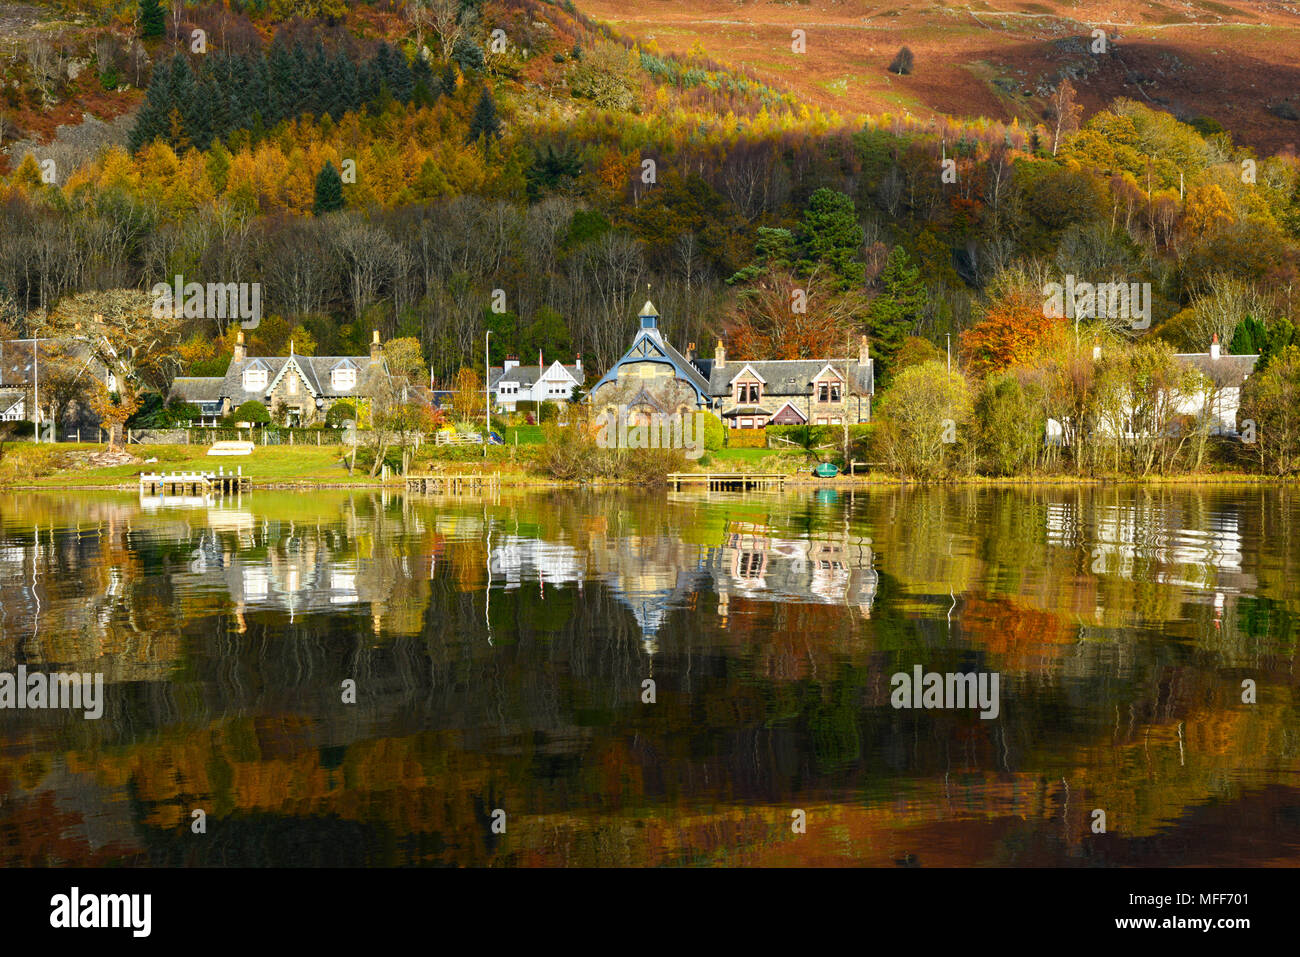 Blick über Loch Earn in St Fillans Dorf, Schottland Großbritannien Herbst Farben und Reflexionen clear blue sky sonnigen Tag Oktober 2017 Stockfoto